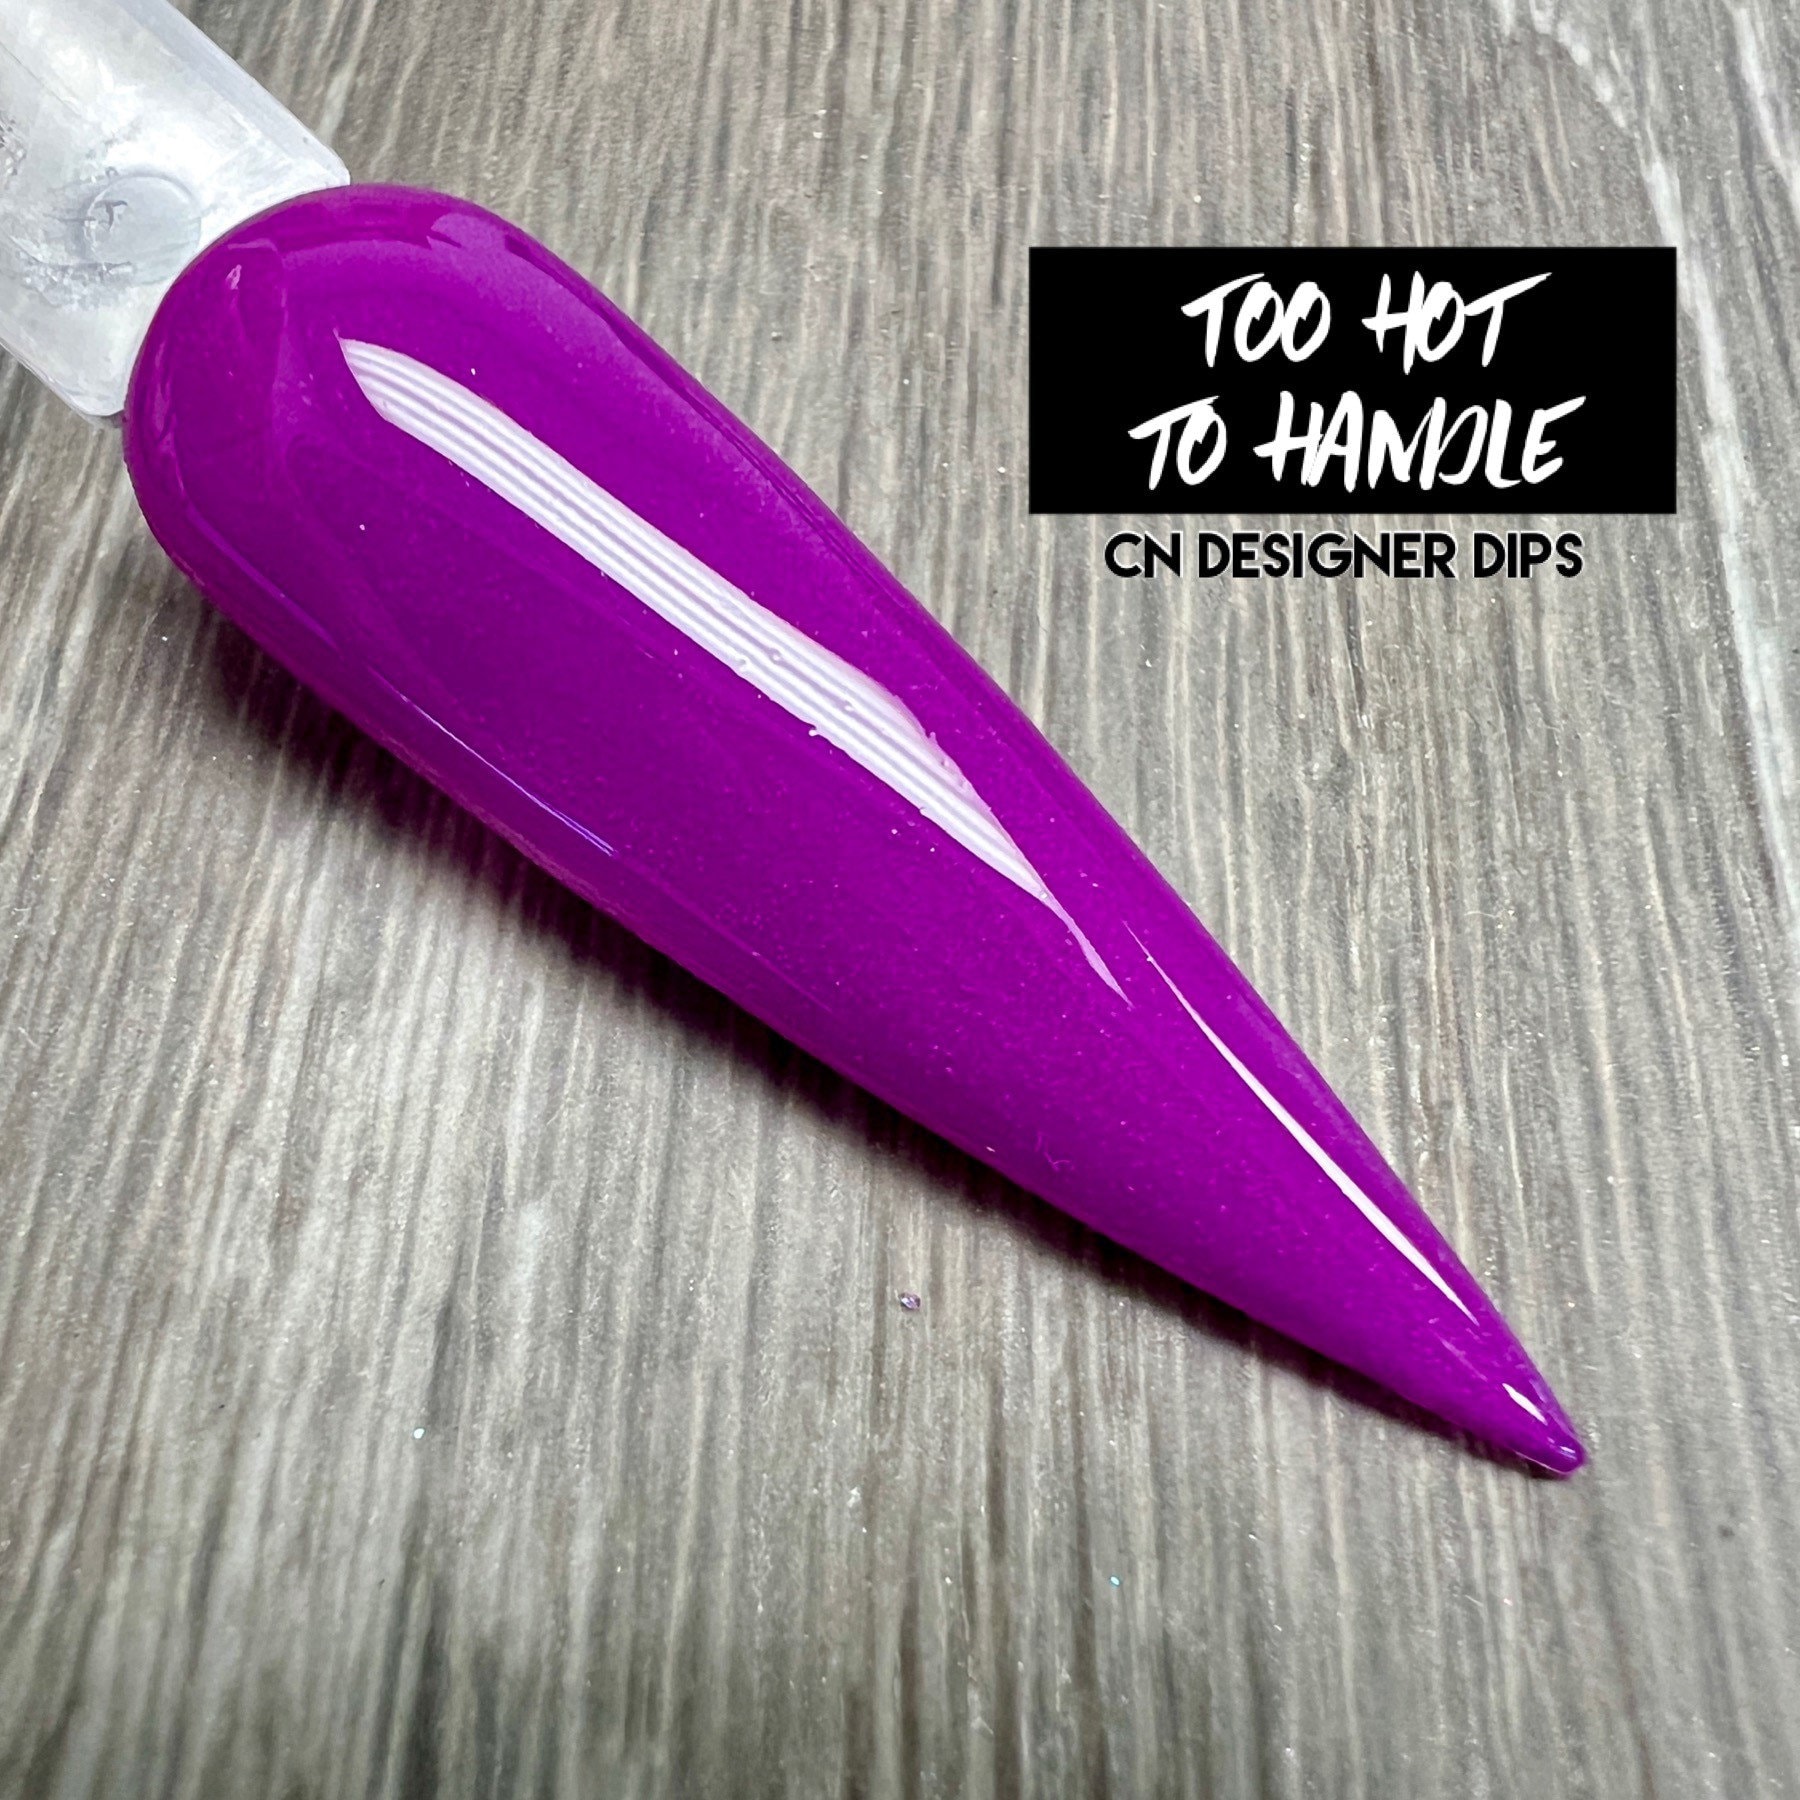 Too Hot To Handle - Dippulver, Dippulver Für Nägel, Nagel Dip, Dip Nailpulver, Dip Powder, Nail Dips, Acryl Powder, Nails von CNDesignerDips